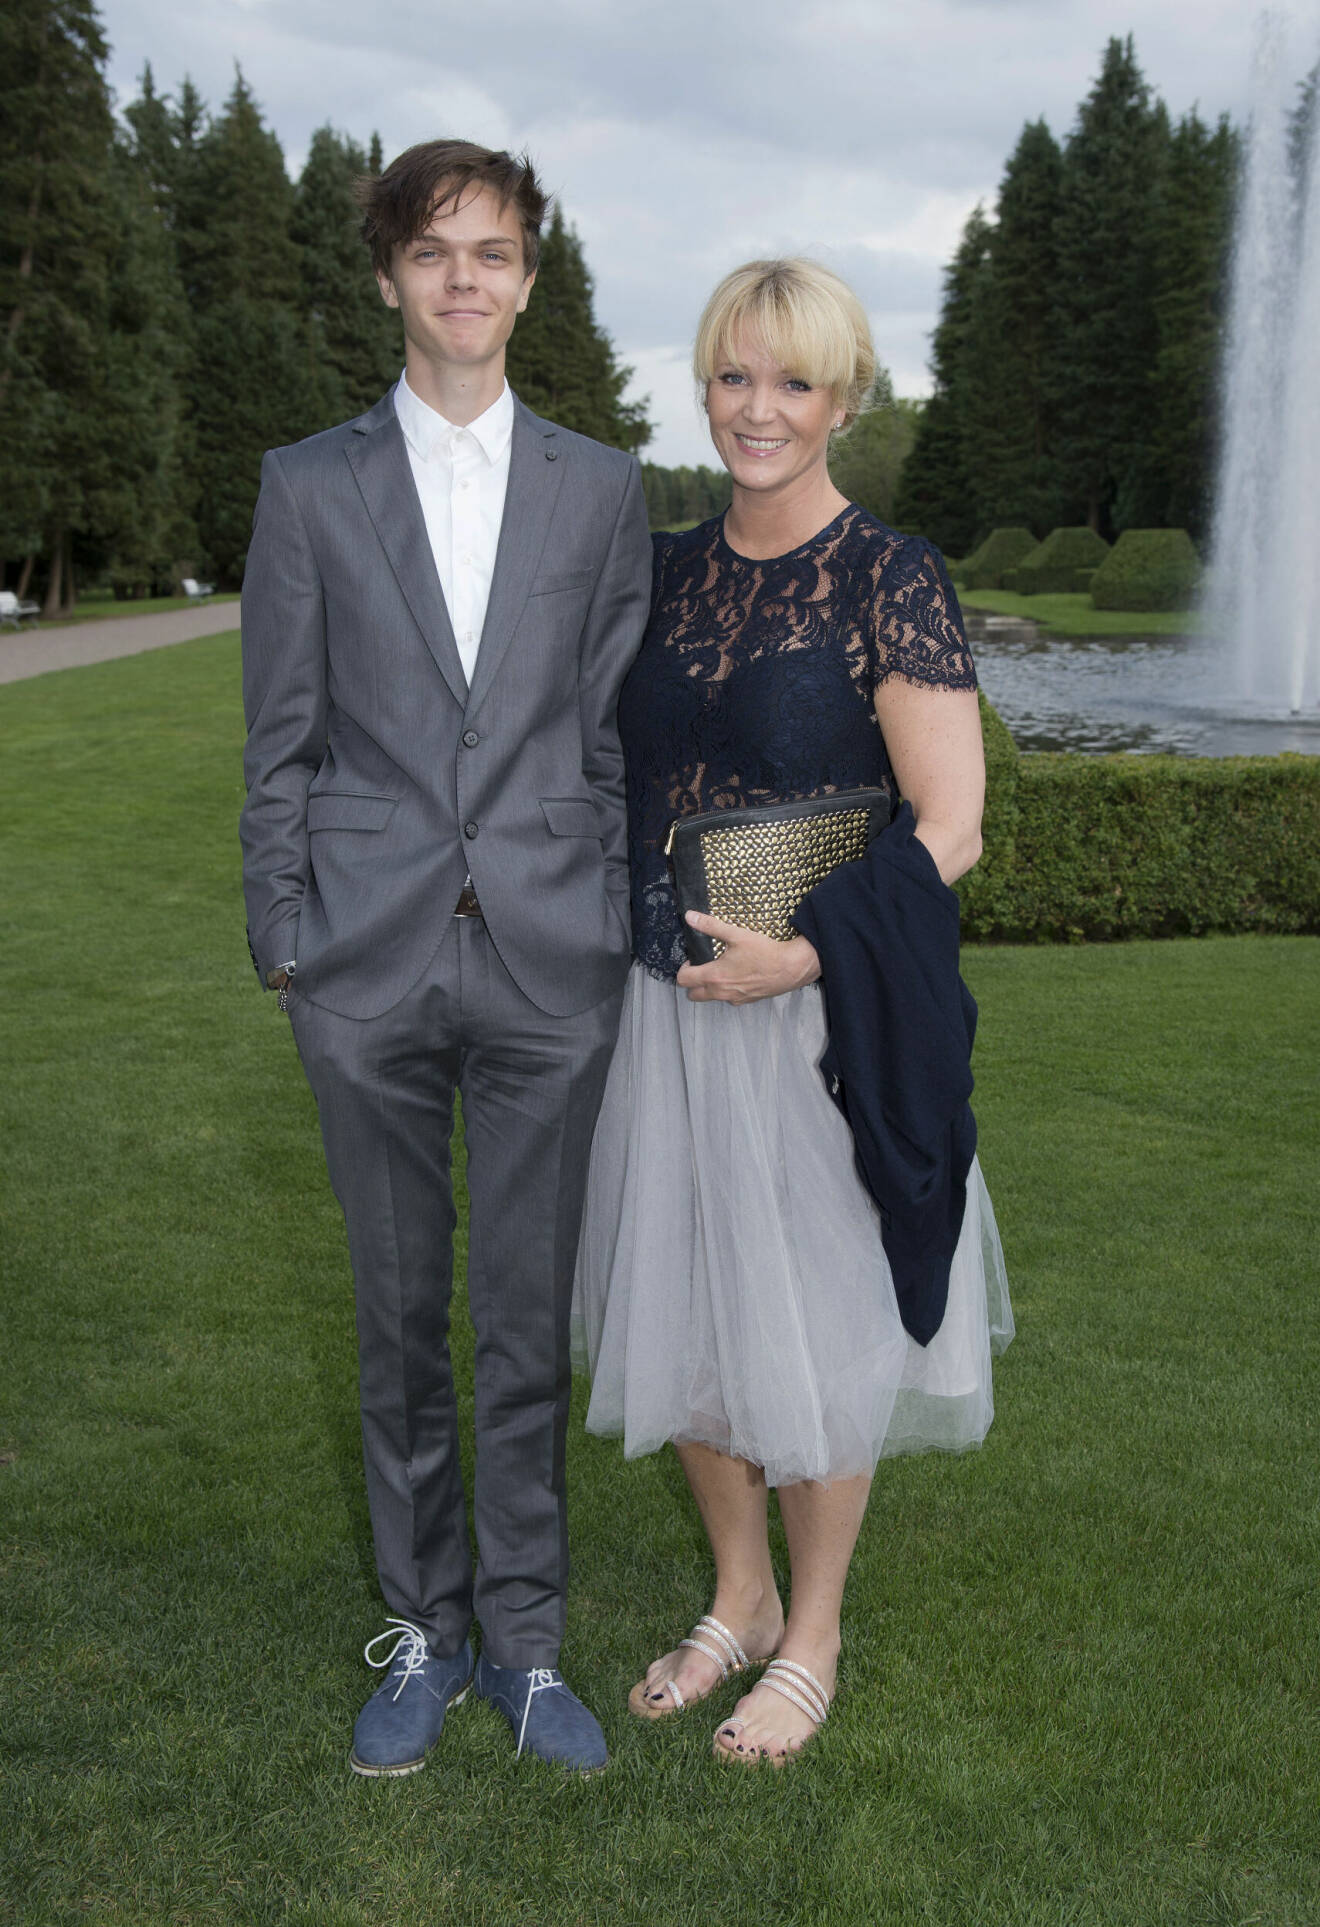 Kattis Ahlström och sonen Love Ahlström på event i Båstad 2016. Båda två har formell klädsel.